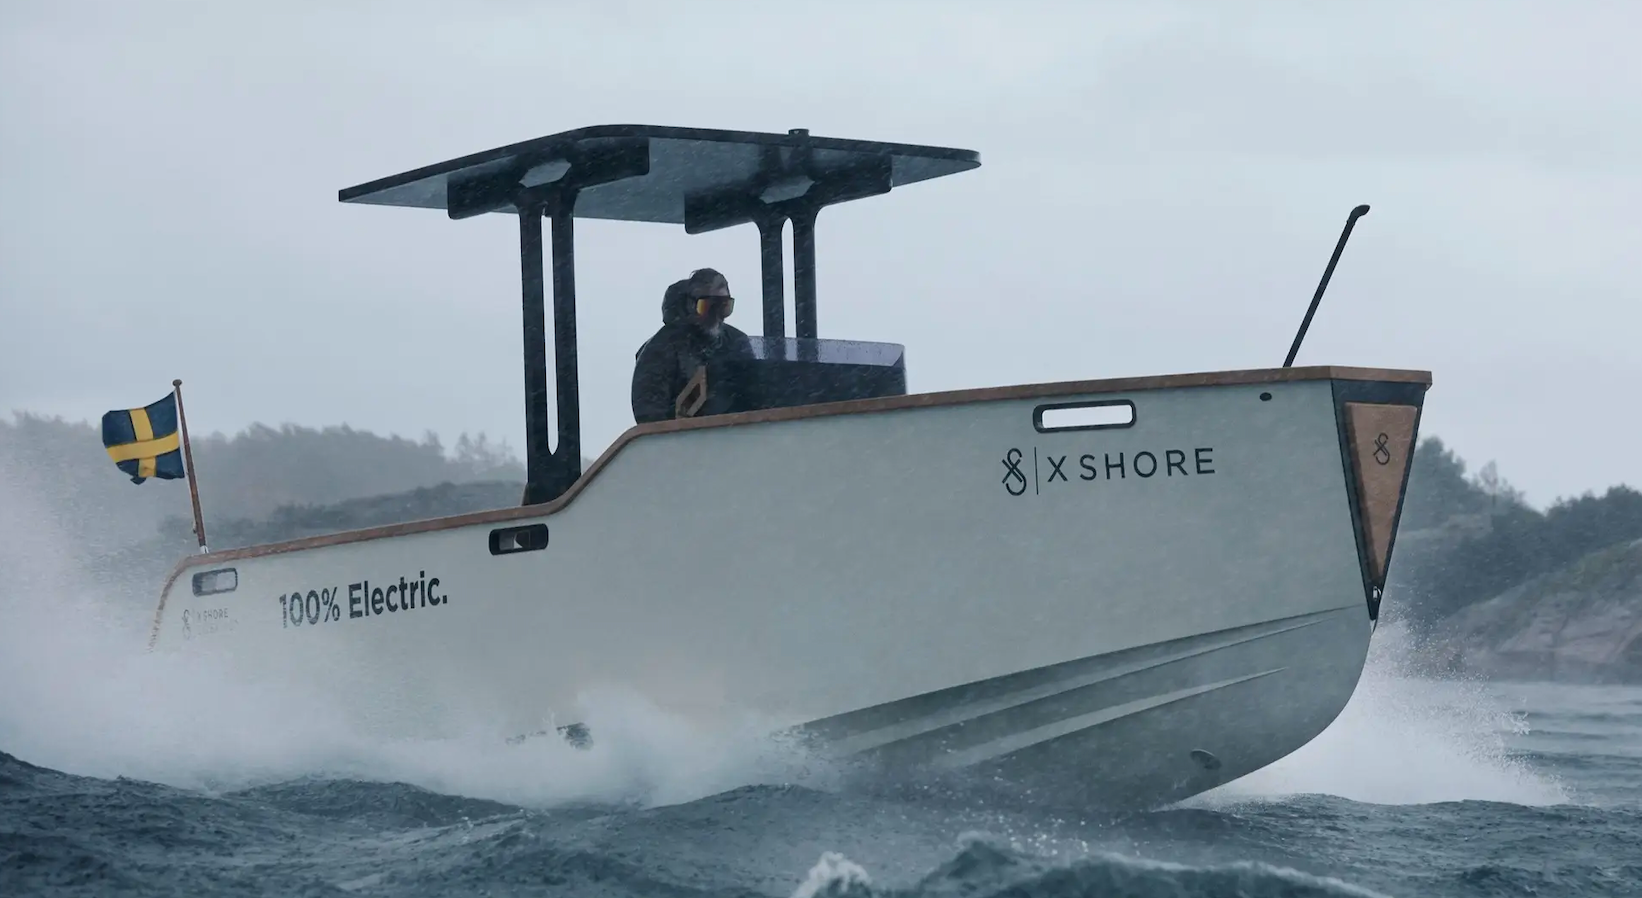 Eelex 800, X-Shore boat